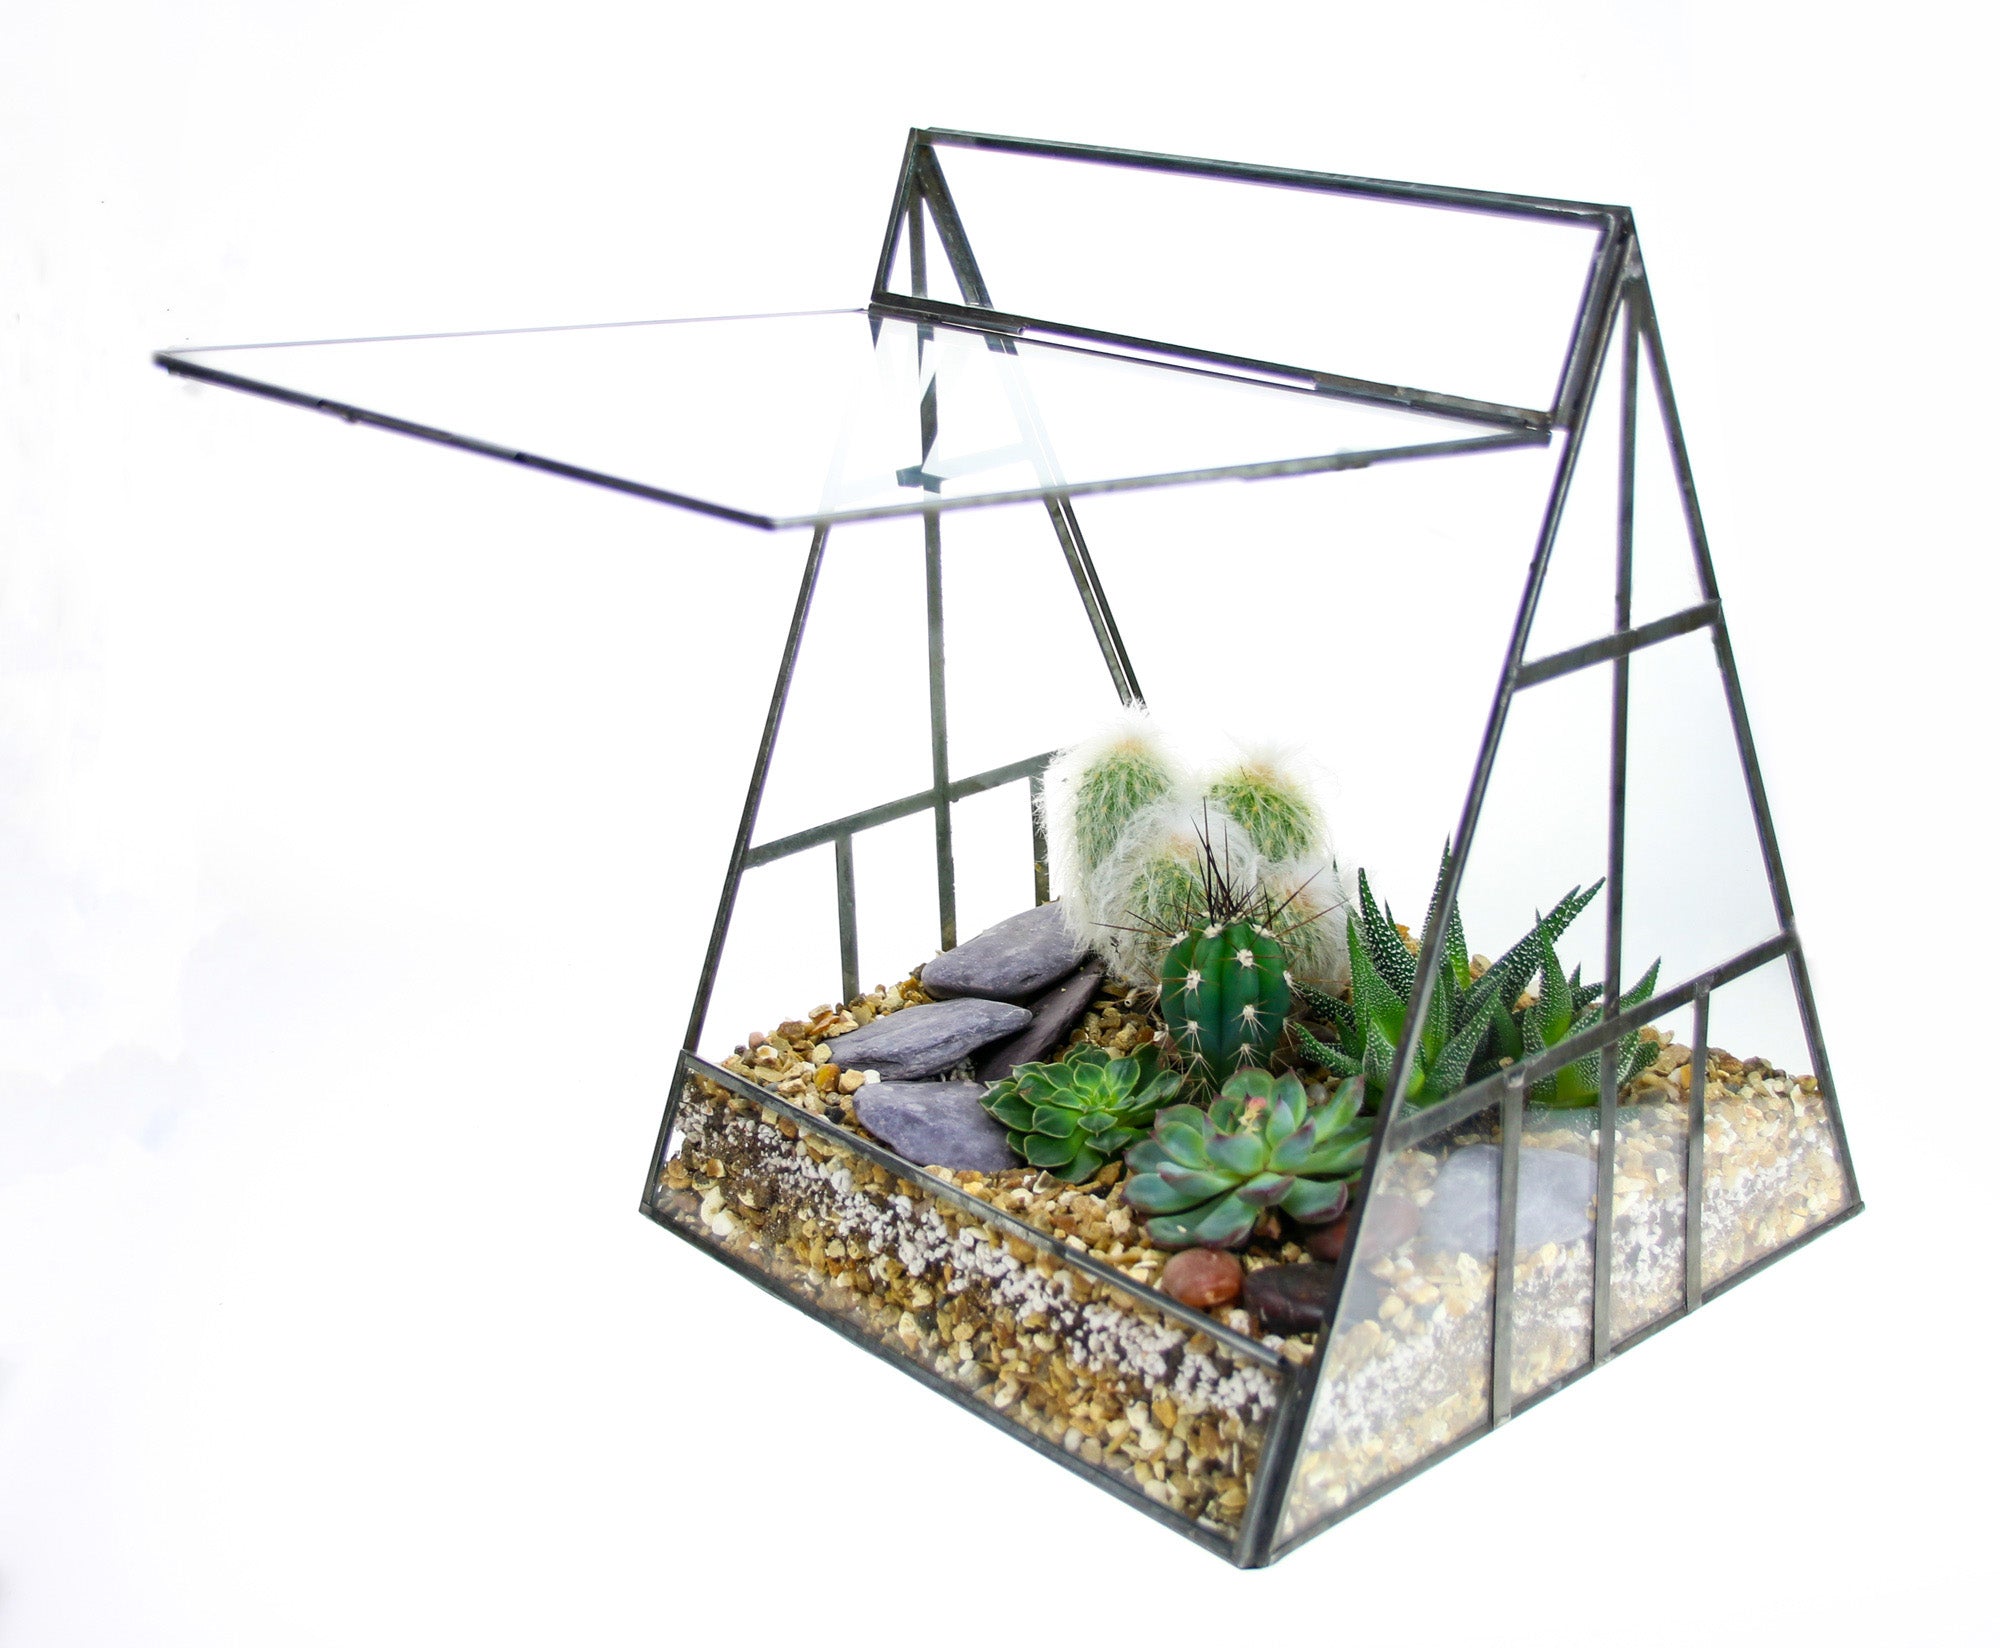 Enclosed greenhouse terrarium